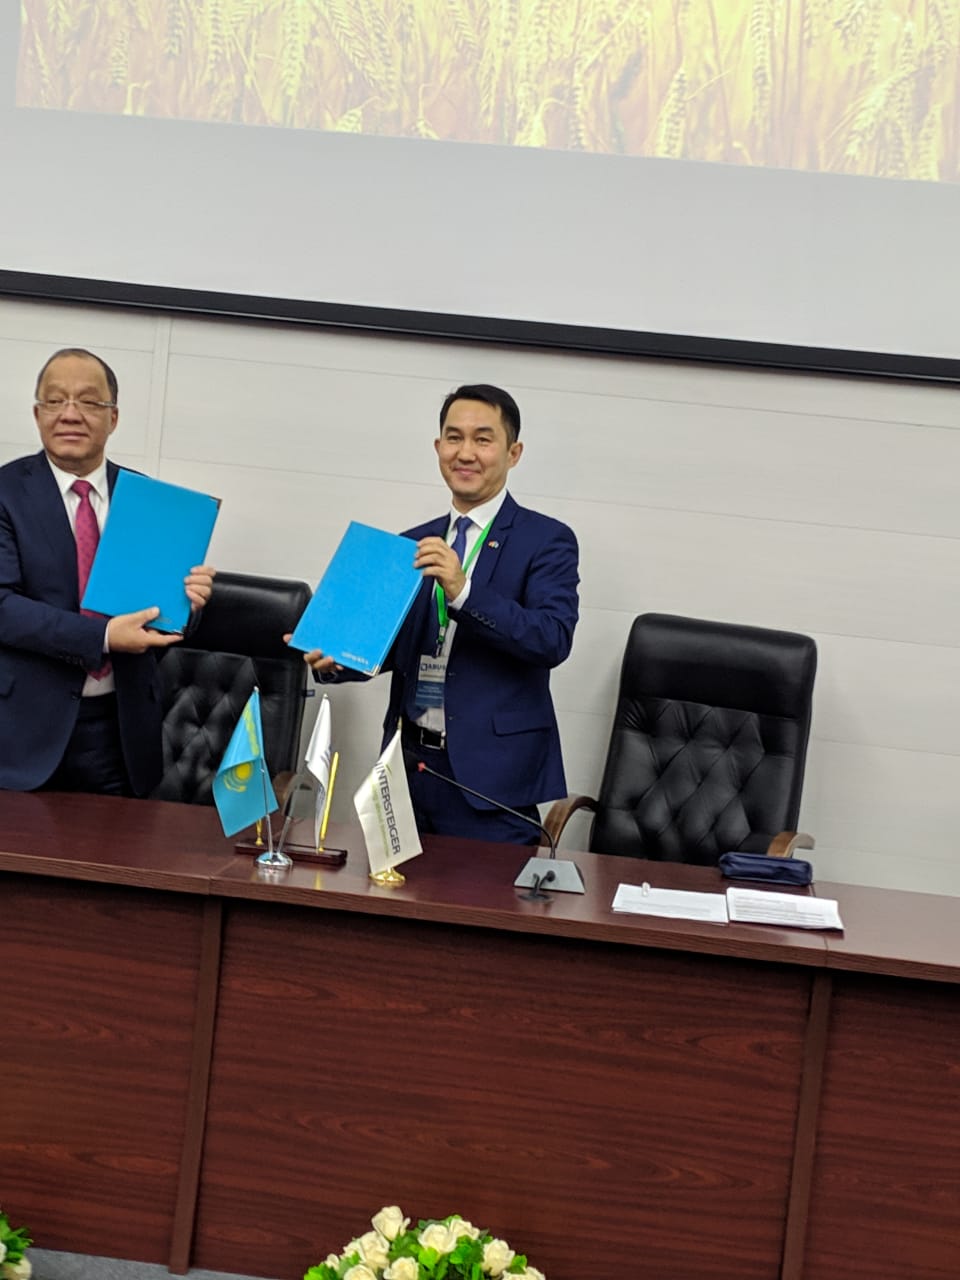 Подписание меморандума о сотрудничестве между НАО “НАНОЦ” и компанией “Astana Business Group BM LTD”. 